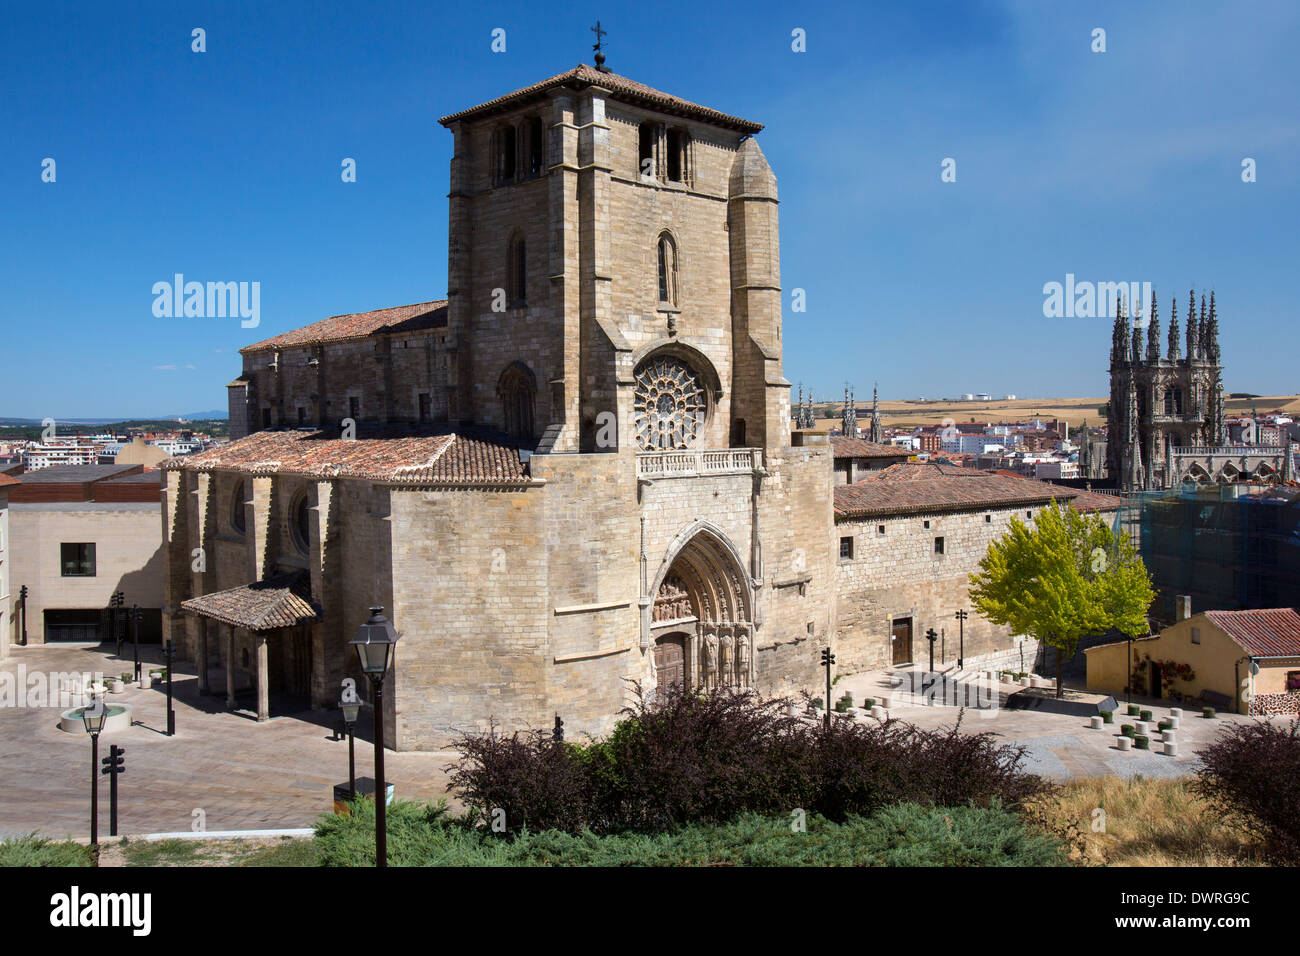 Iglesia dan Estaban dans la ville de Burgos dans le Castilla-y-Leon région du nord de l'Espagne. Banque D'Images